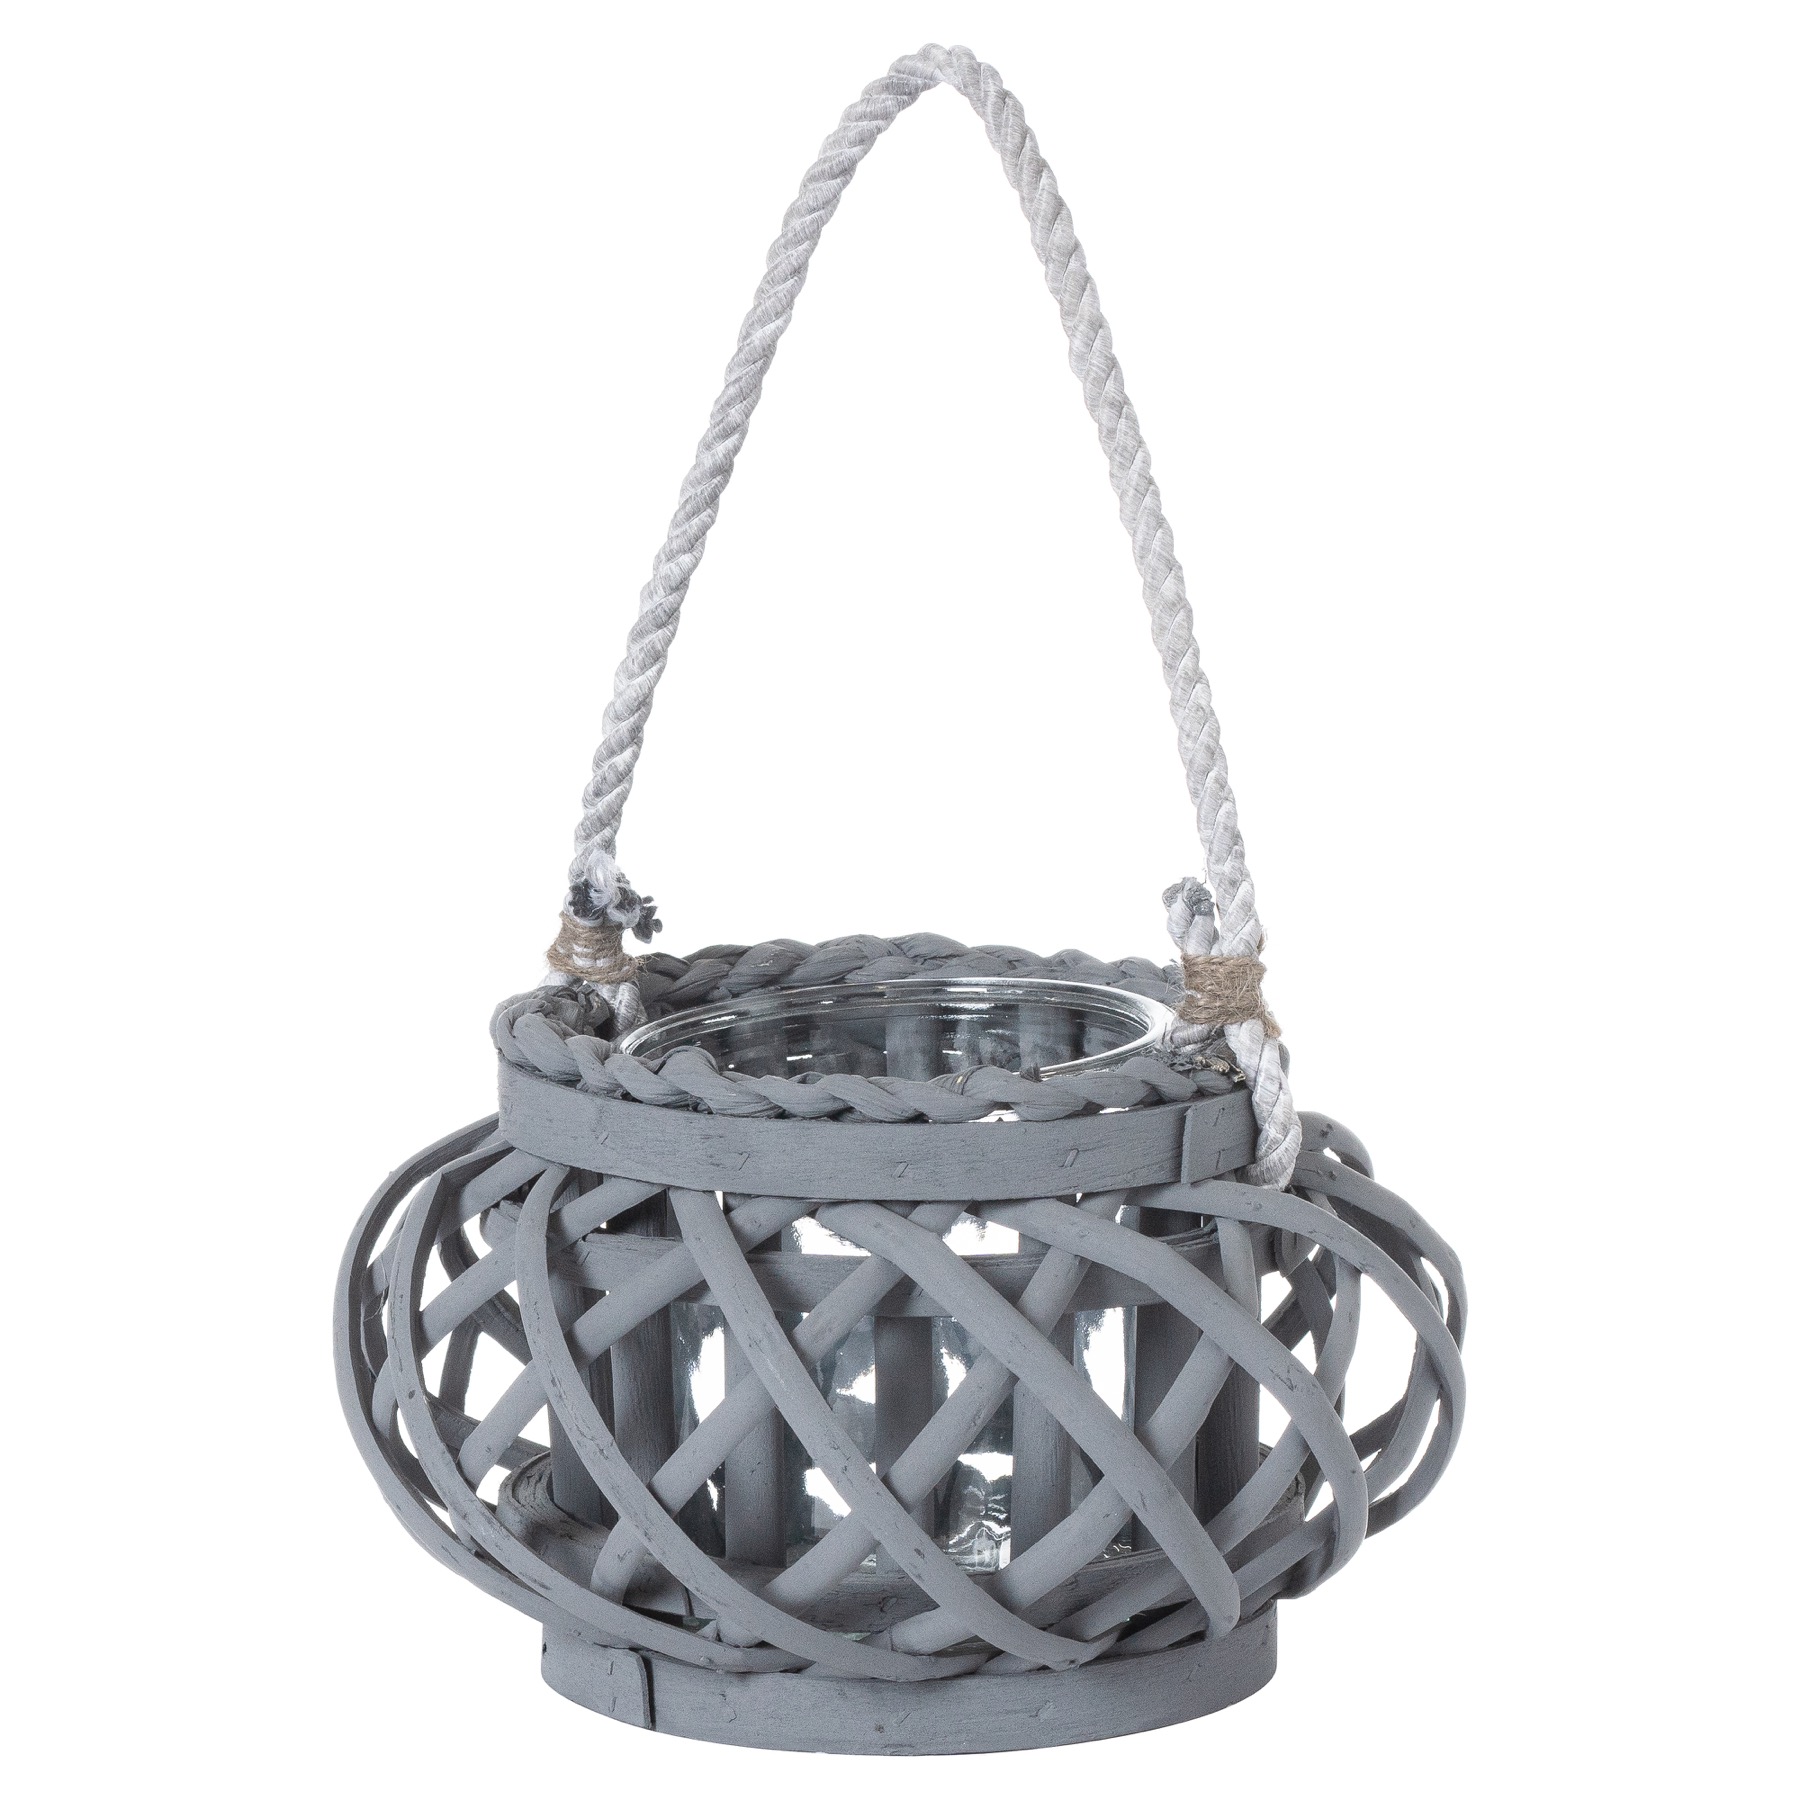 Large Grey Wicker Basket Lantern - Image 1